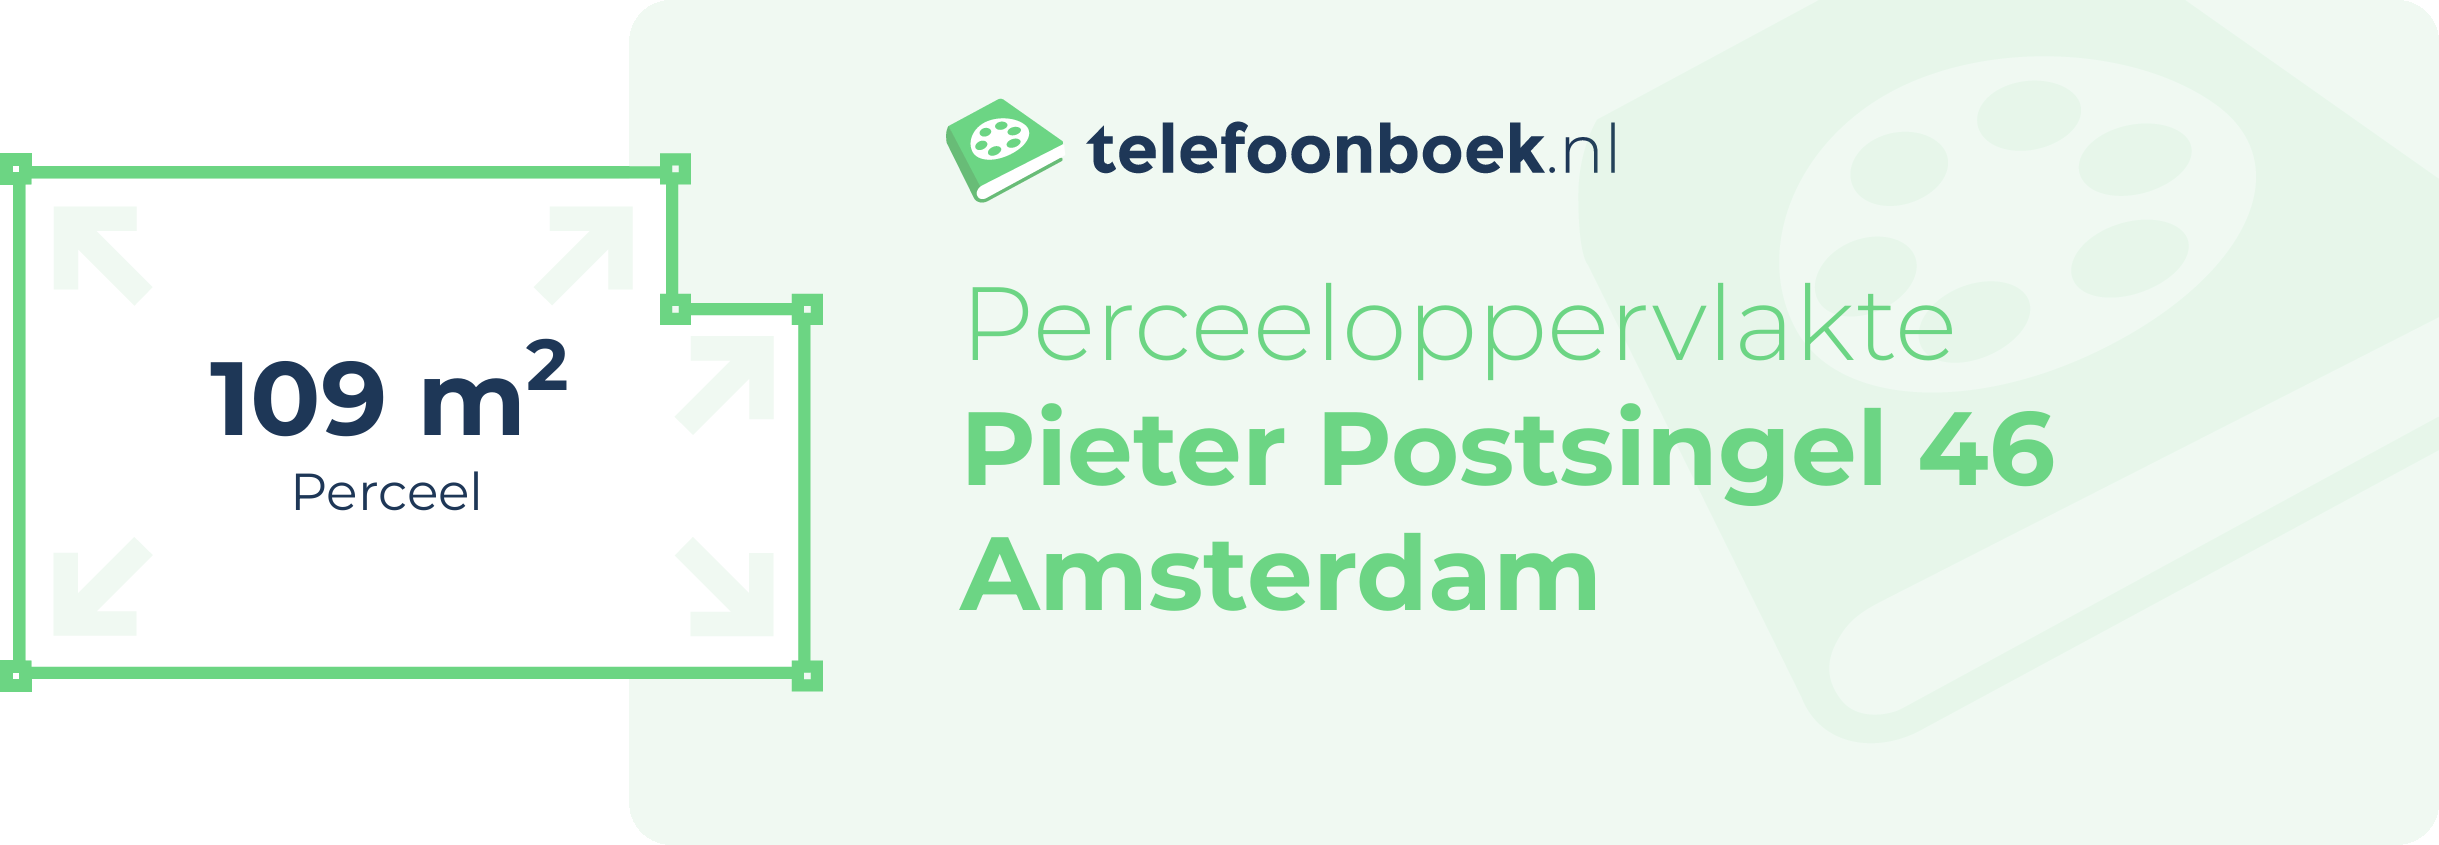 Perceeloppervlakte Pieter Postsingel 46 Amsterdam